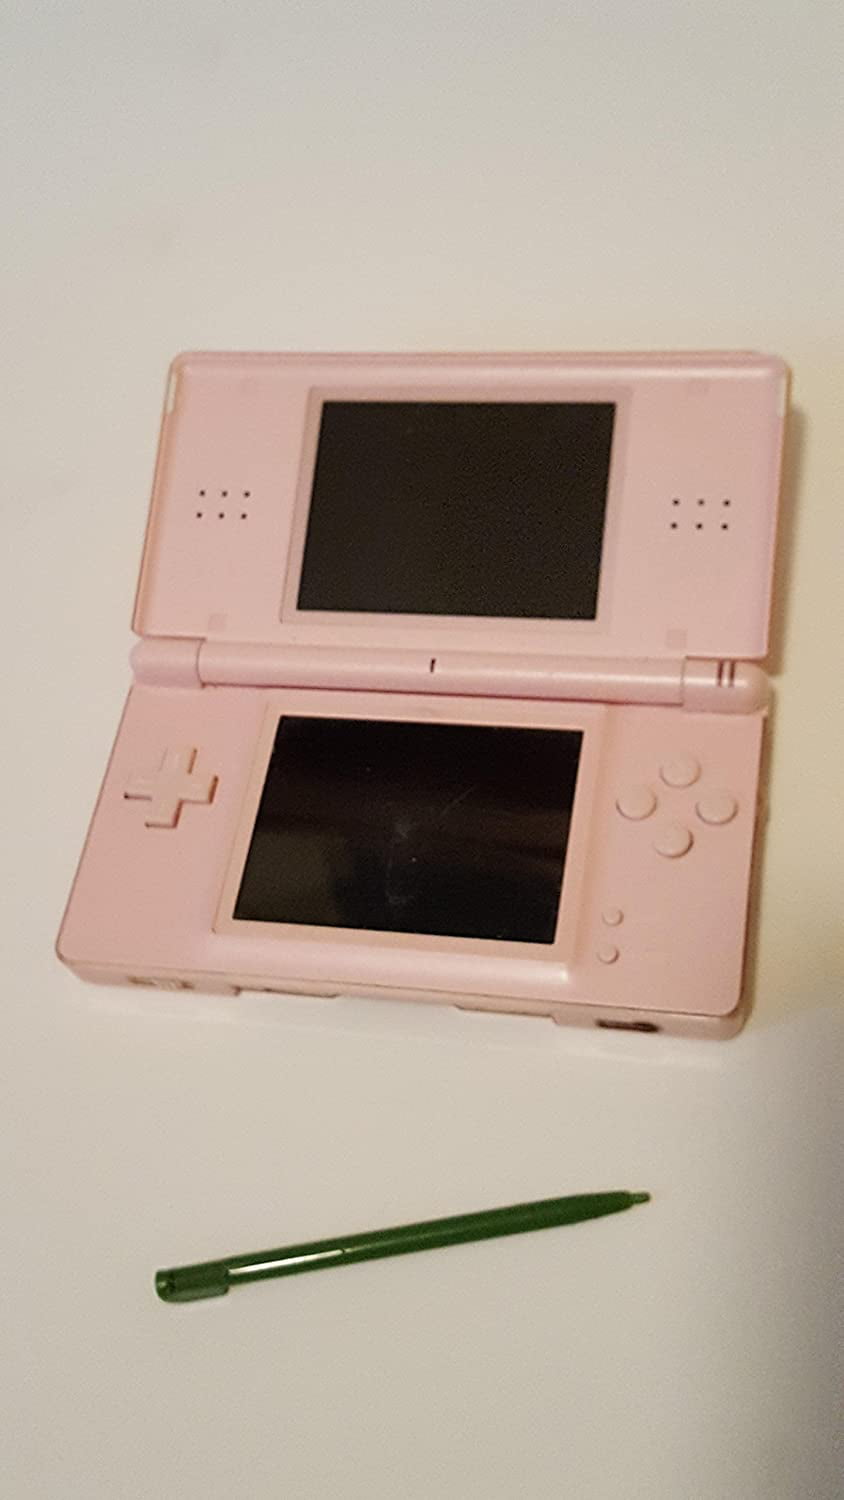 lejer Alperne krave Restored Nintendo DS Lite Coral Pink Handheld (Refurbished) - Walmart.com